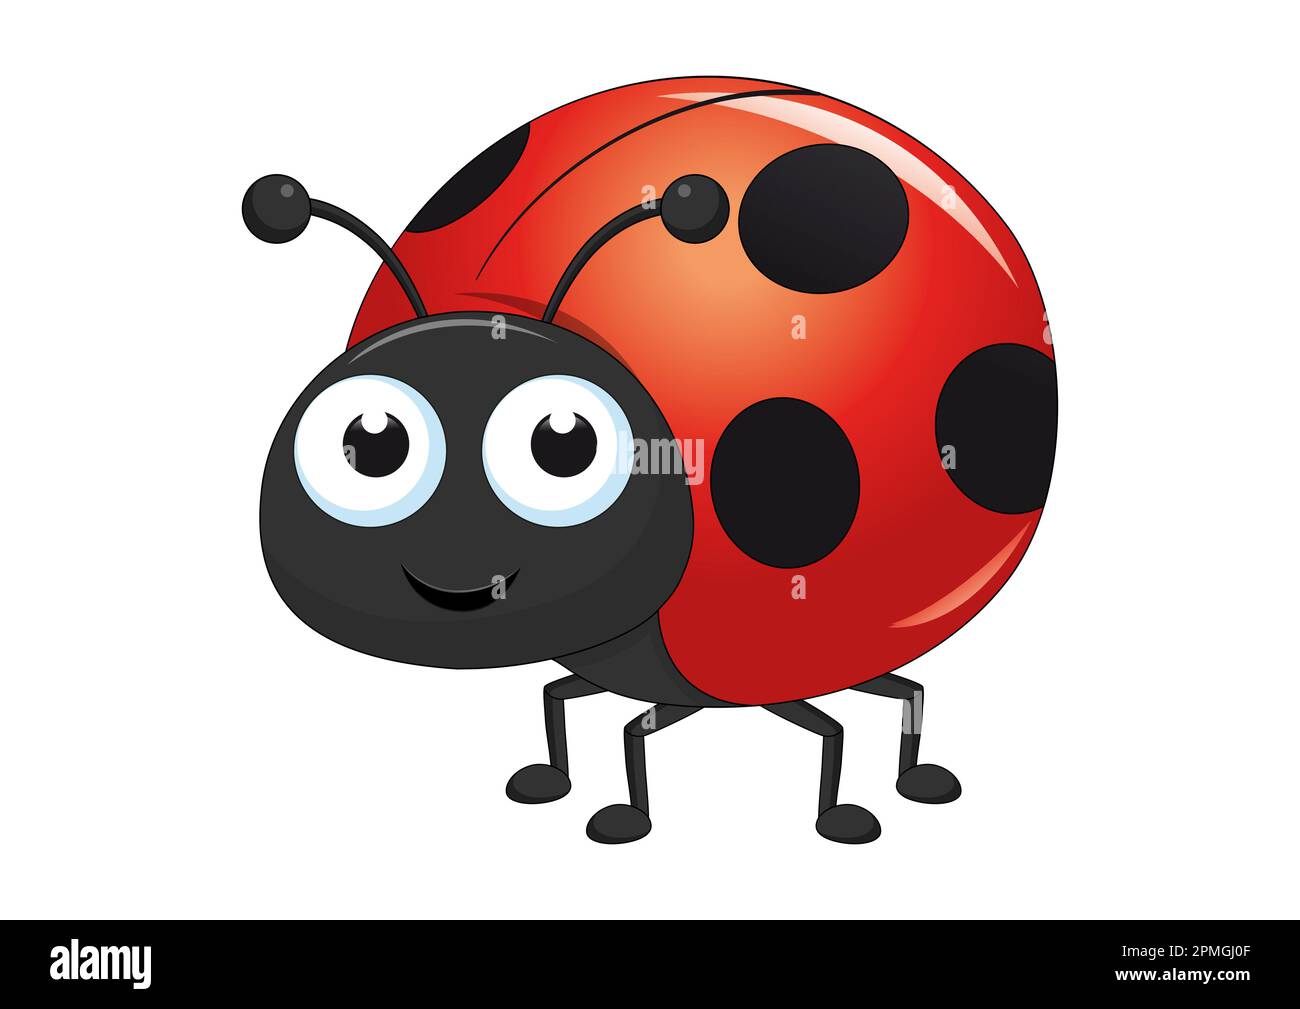 Ladybug character vector illustration. Cartoon ladybug isolated on white background Stock Vector